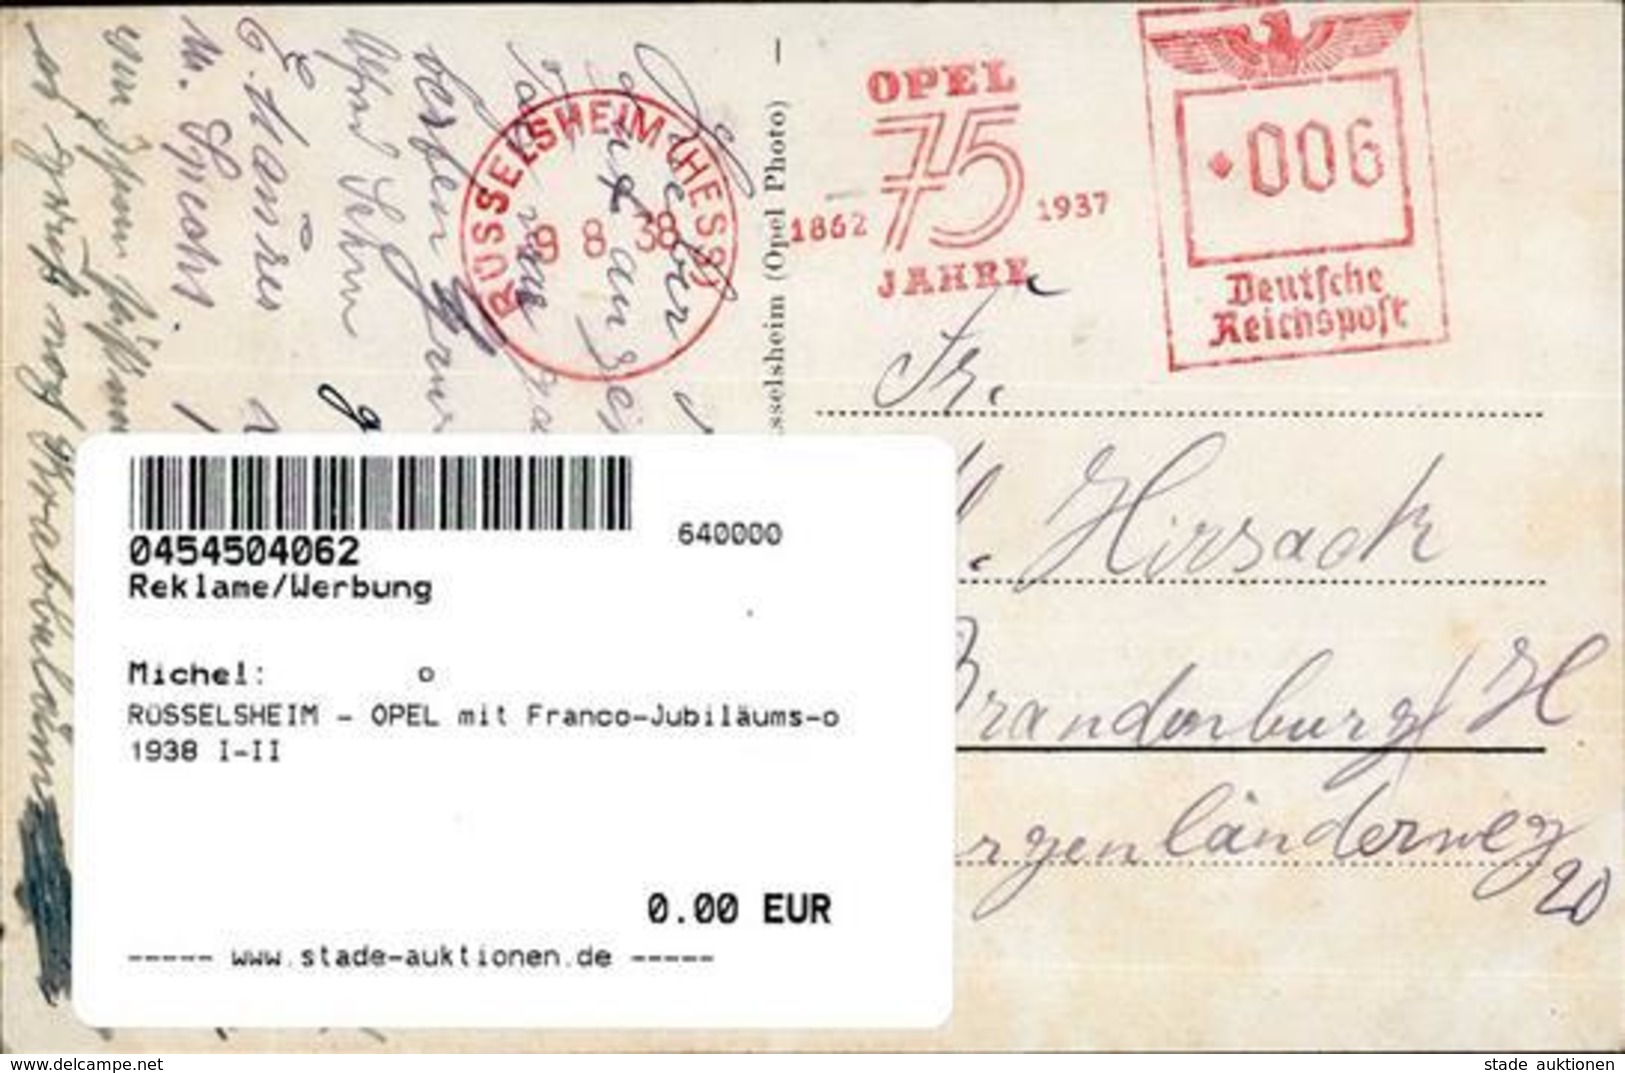 RÜSSELSHEIM - OPEL Mit Franco-Jubiläums-o 1938 I-II - Werbepostkarten